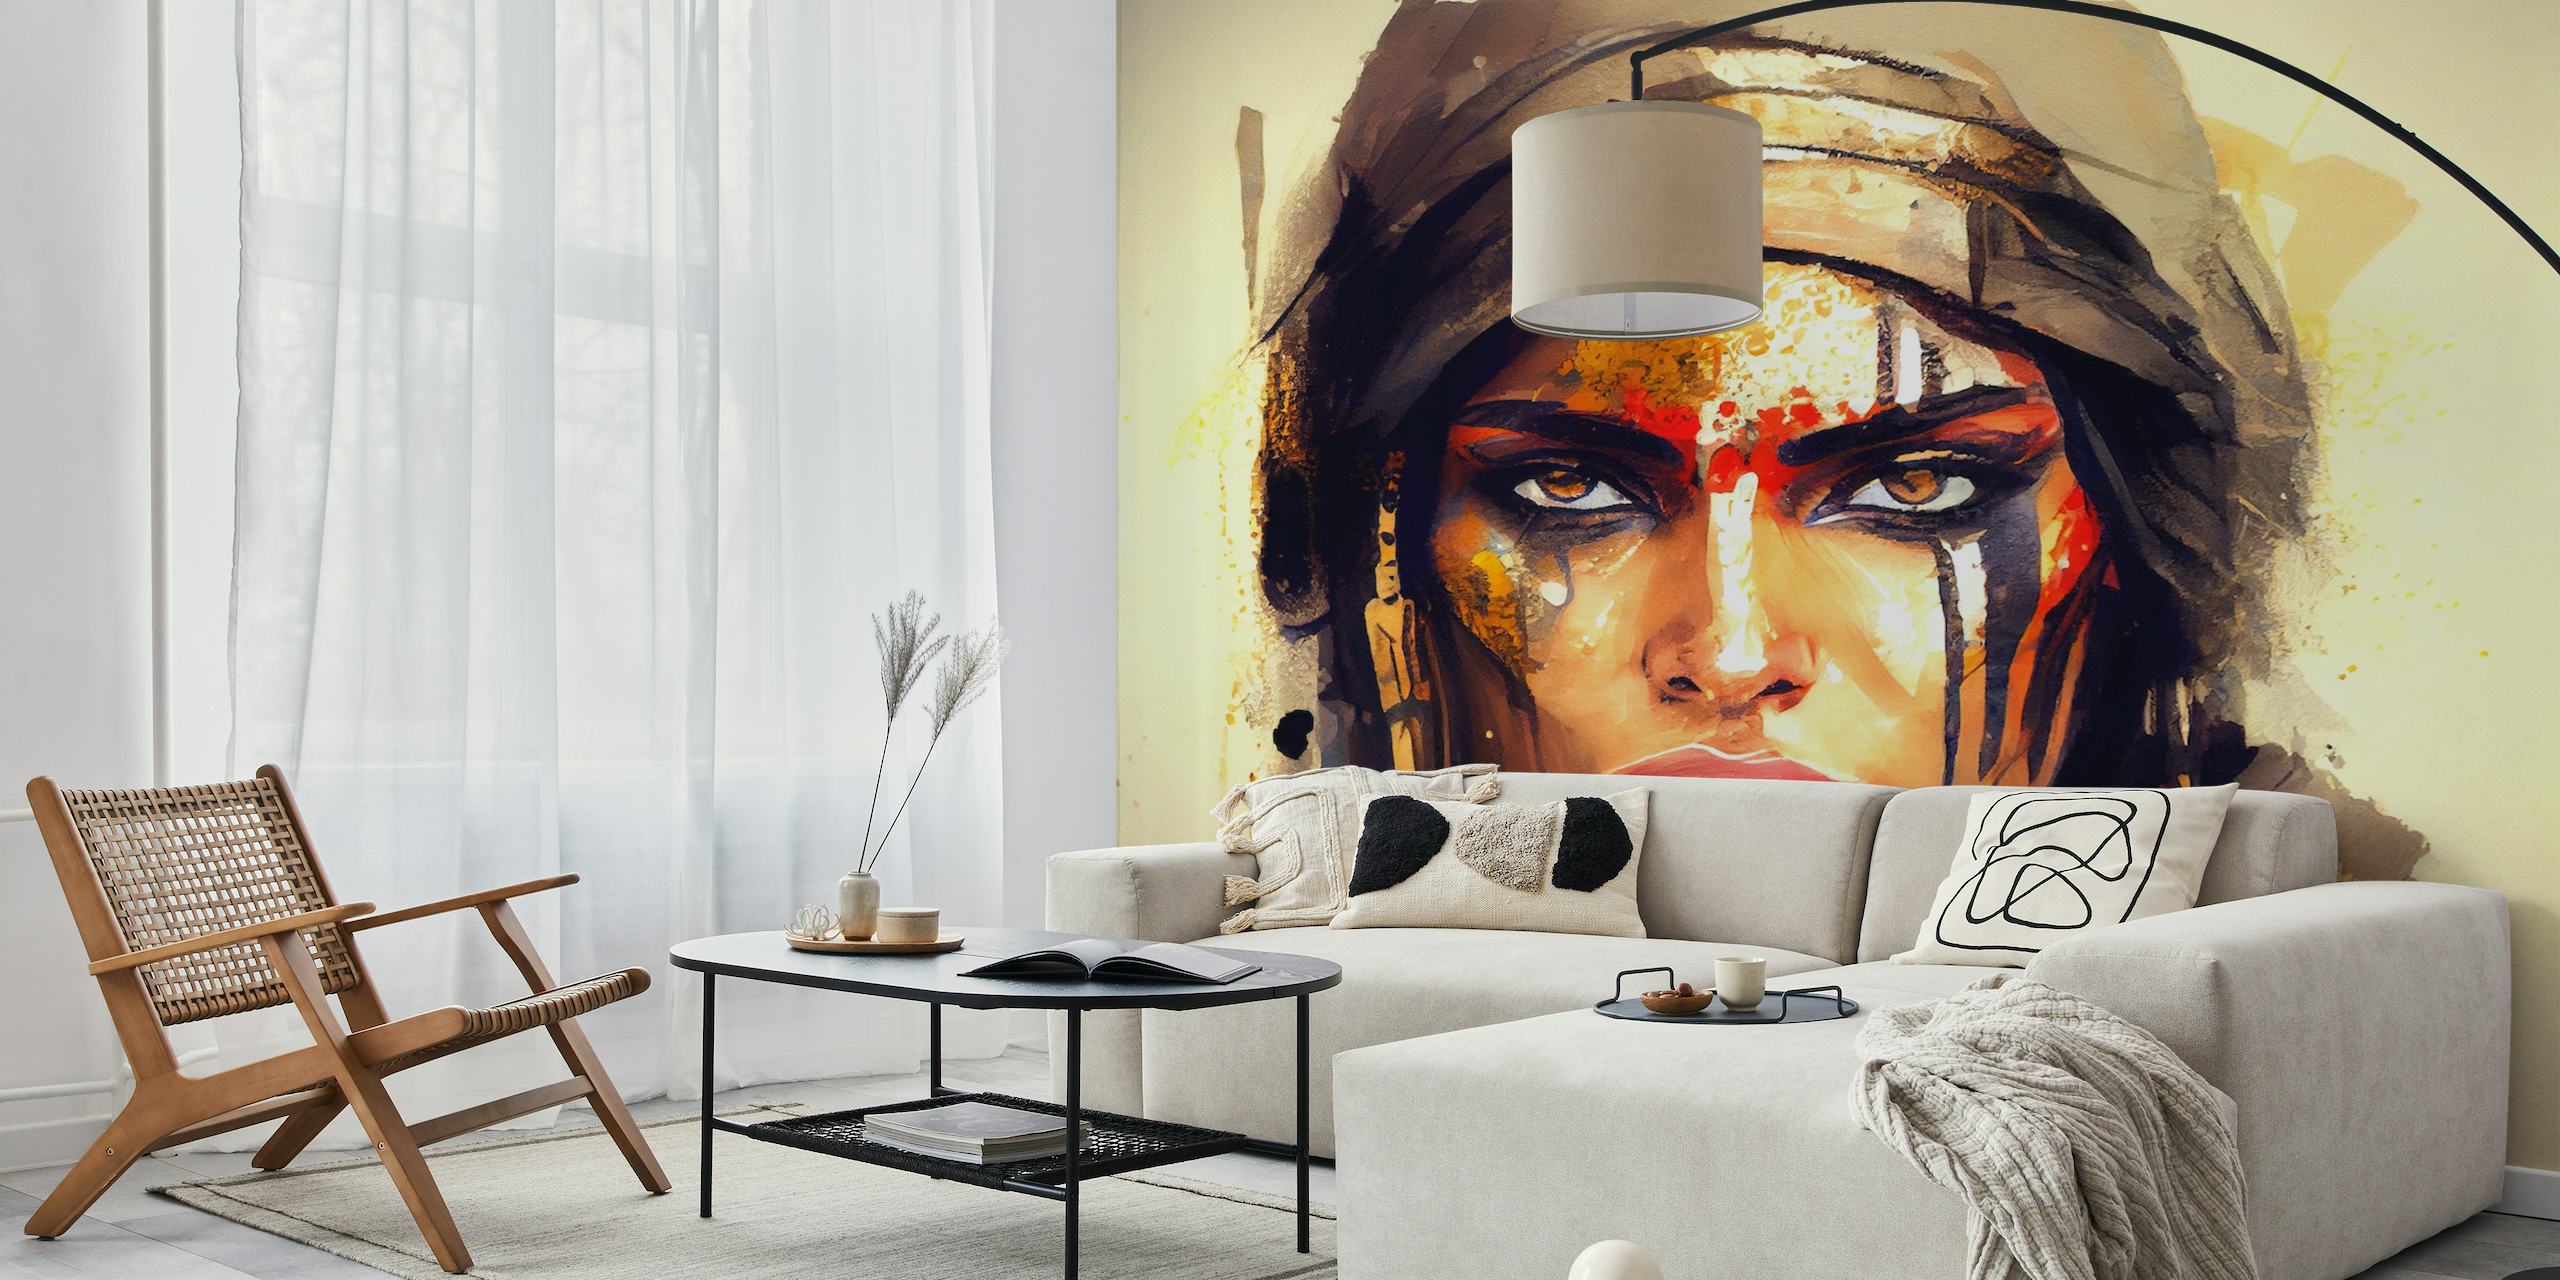 Rappresentazione artistica di una potente donna guerriera egiziana con un viso dipinto in modo audace e un'espressione determinata.